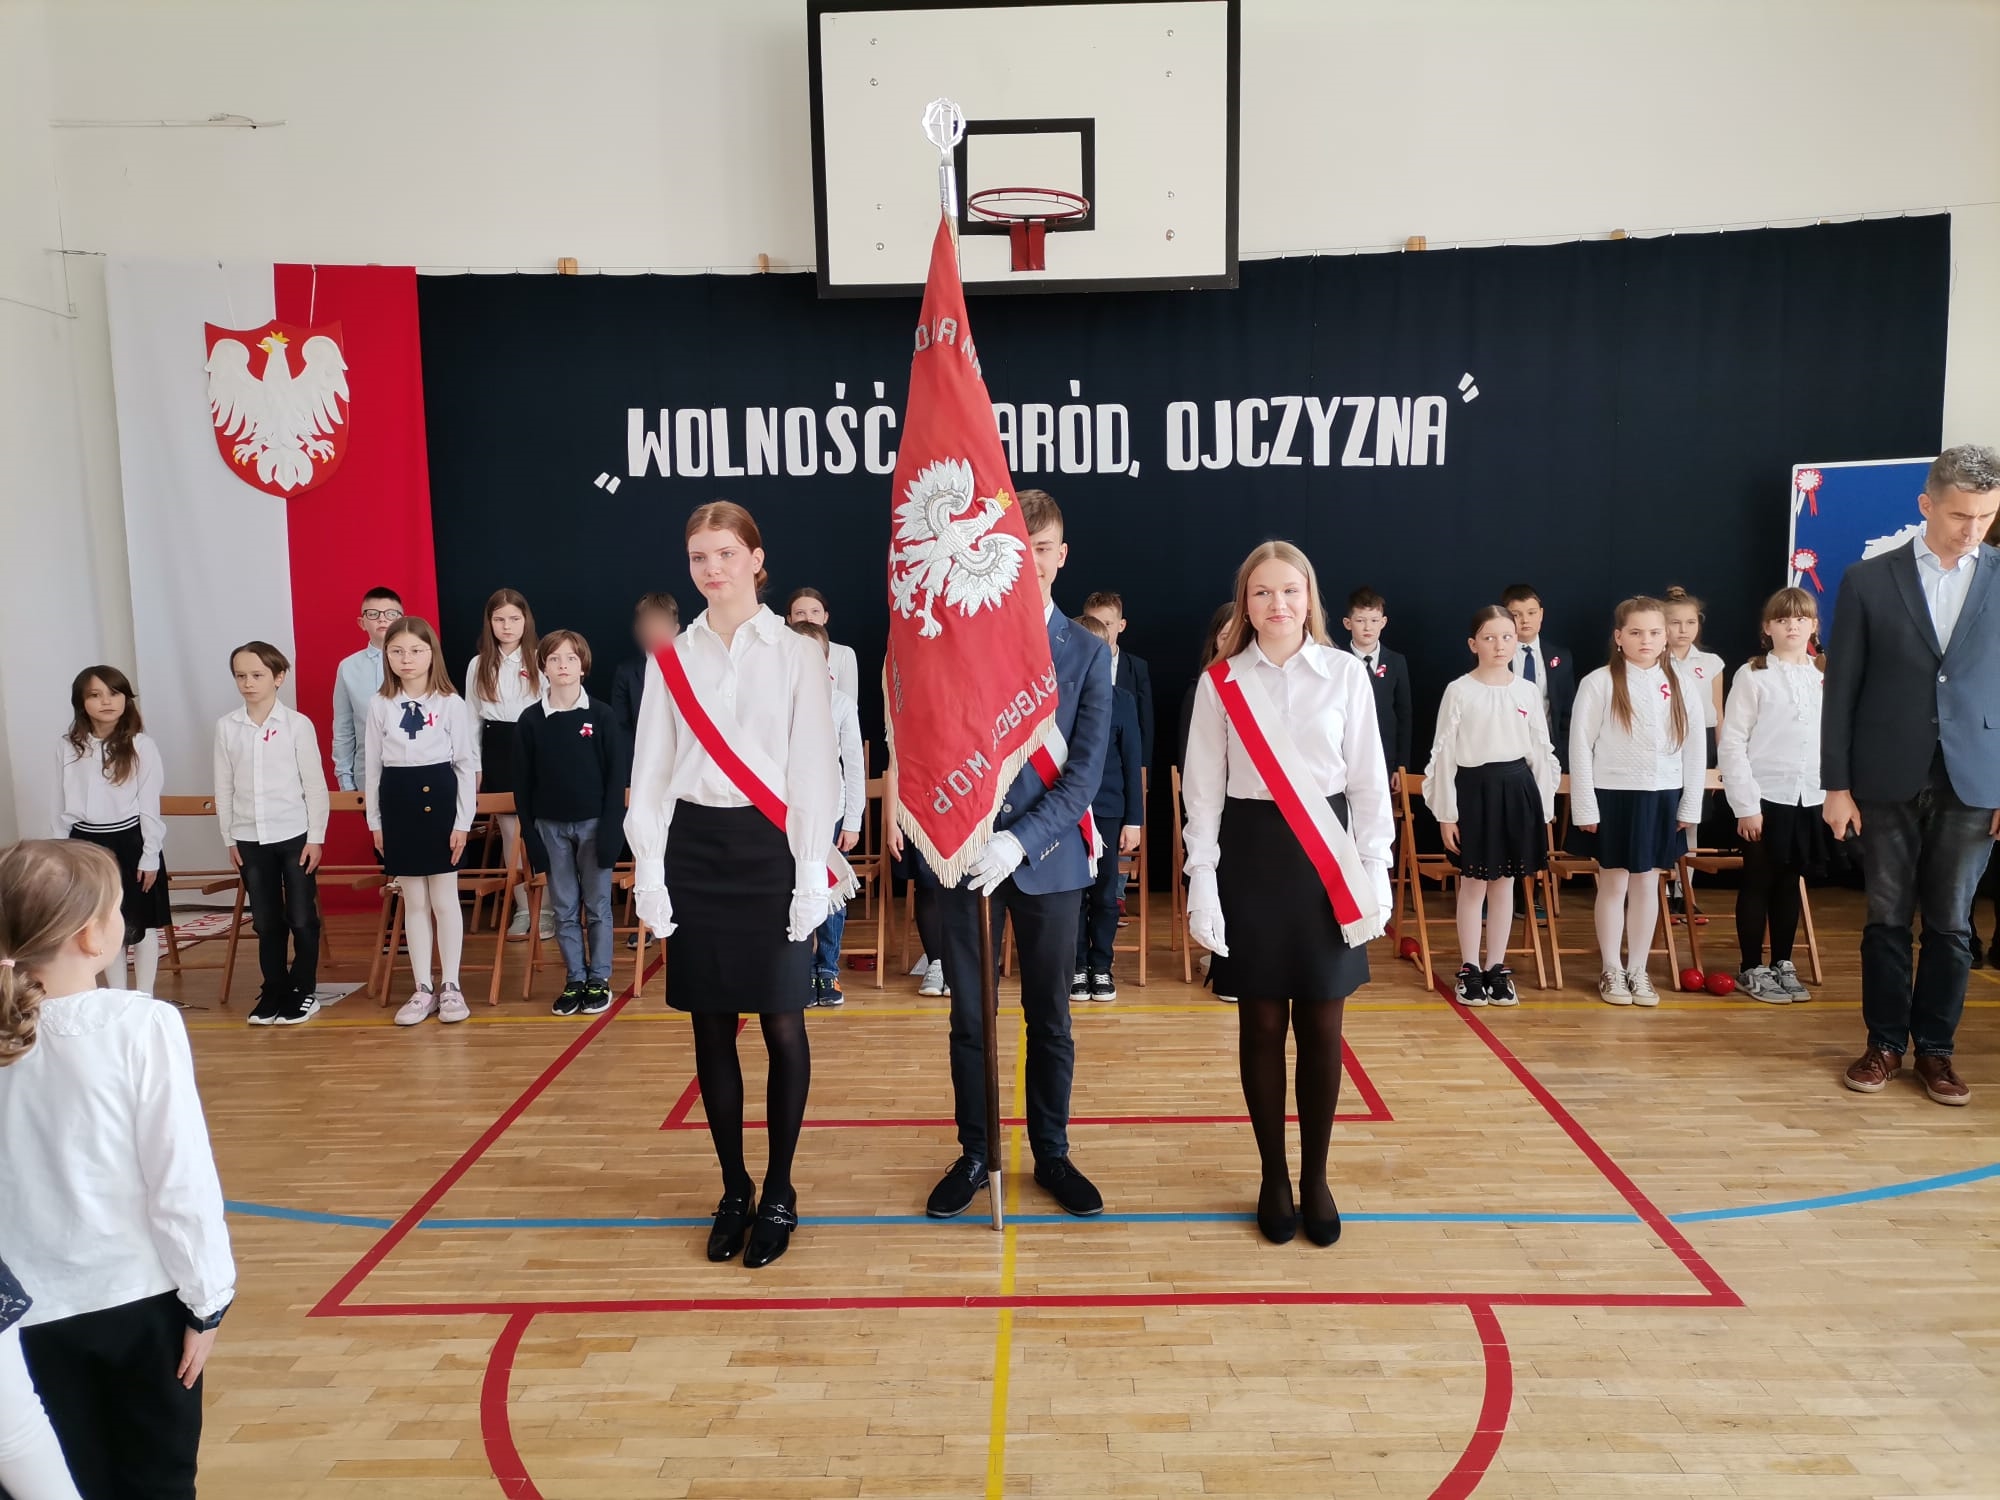 Duża grupa dzieci ubranych na galowo. Na pierwszym planie 2 dziewczyny i chłopiec pośrodku, który trzyma sztandar szkoły. W tle dekoracja, po jej lewej stronie flaga Polski i godło, na środku napis Wolność naród ojczyzna